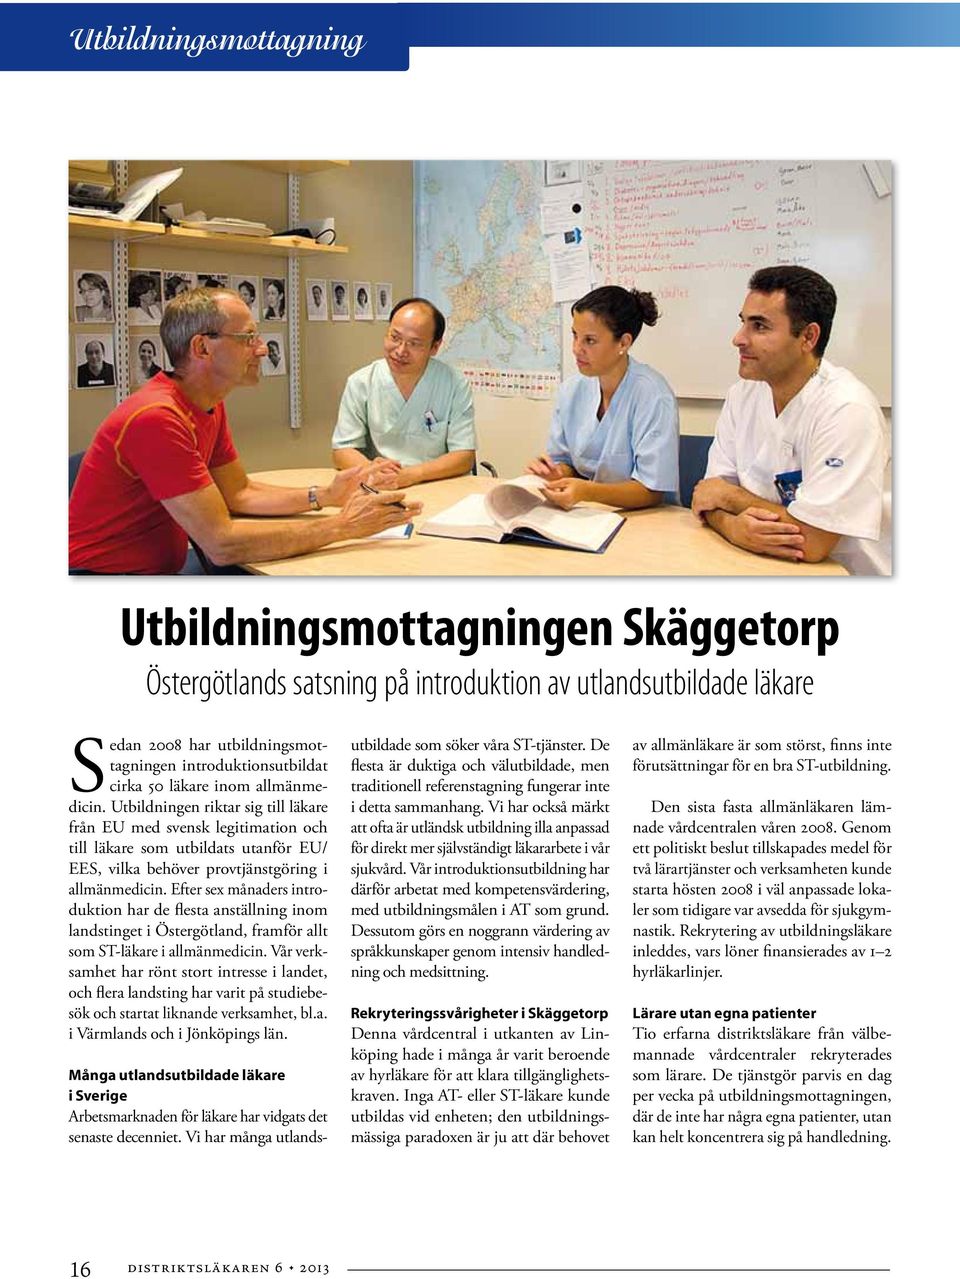 Efter sex månaders introduktion har de flesta anställning inom landstinget i Östergötland, framför allt som ST-läkare i allmänmedicin.